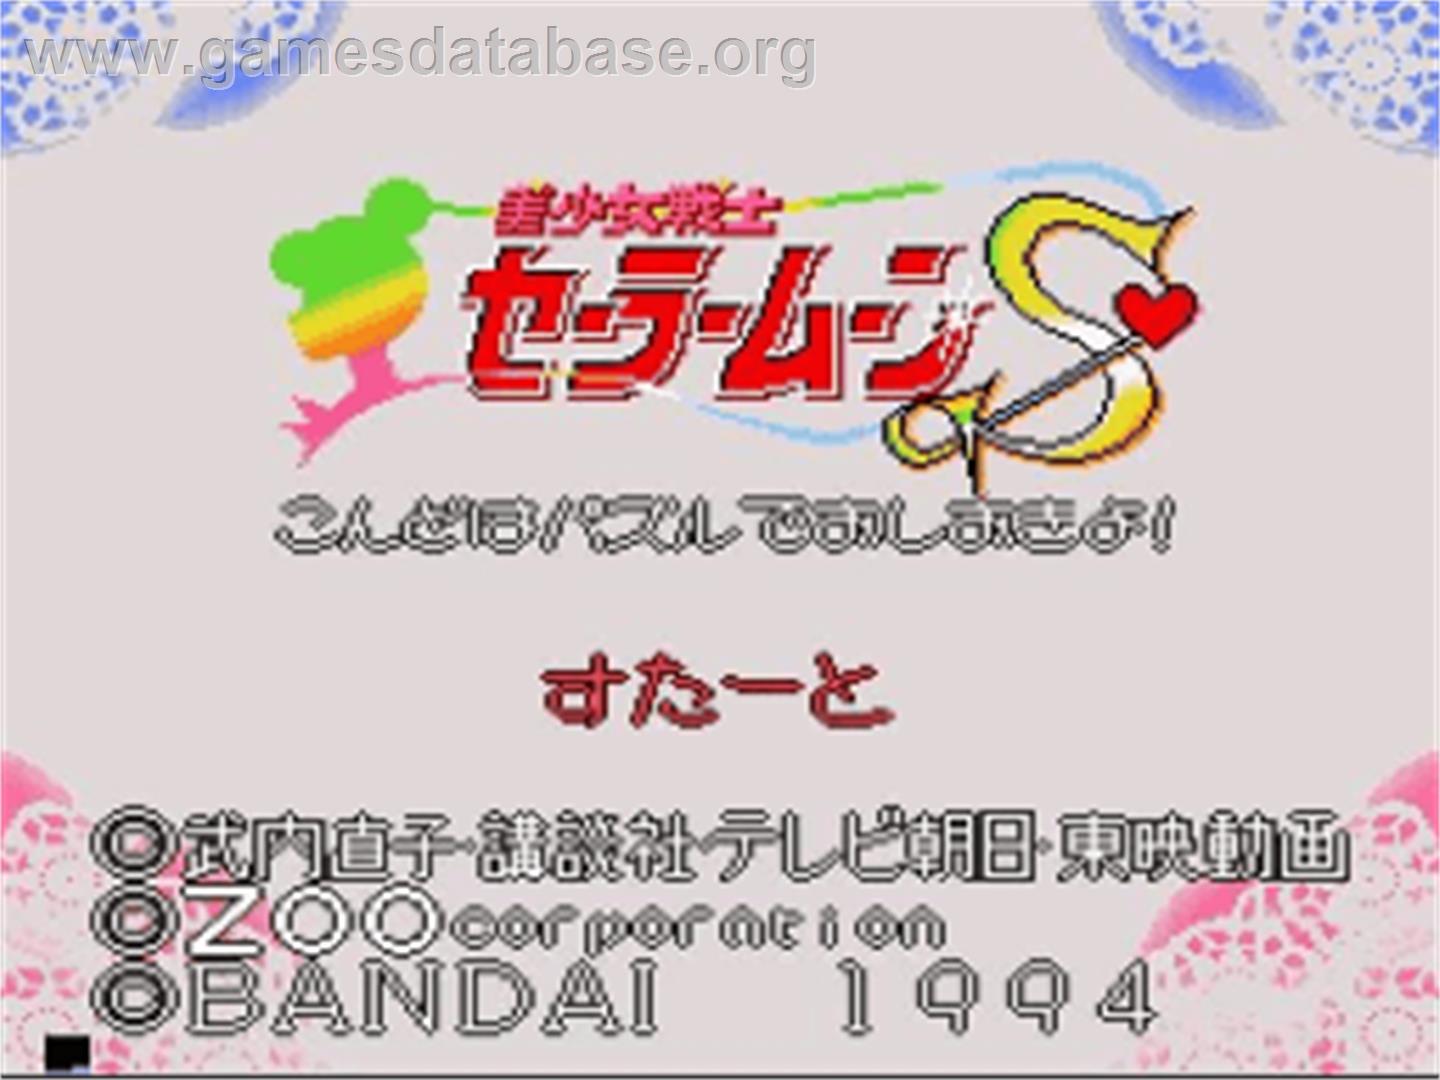 Bishoujo Senshi Sailor Moon S: Kondo wa Puzzle de Oshioki yo - Nintendo SNES - Artwork - Title Screen